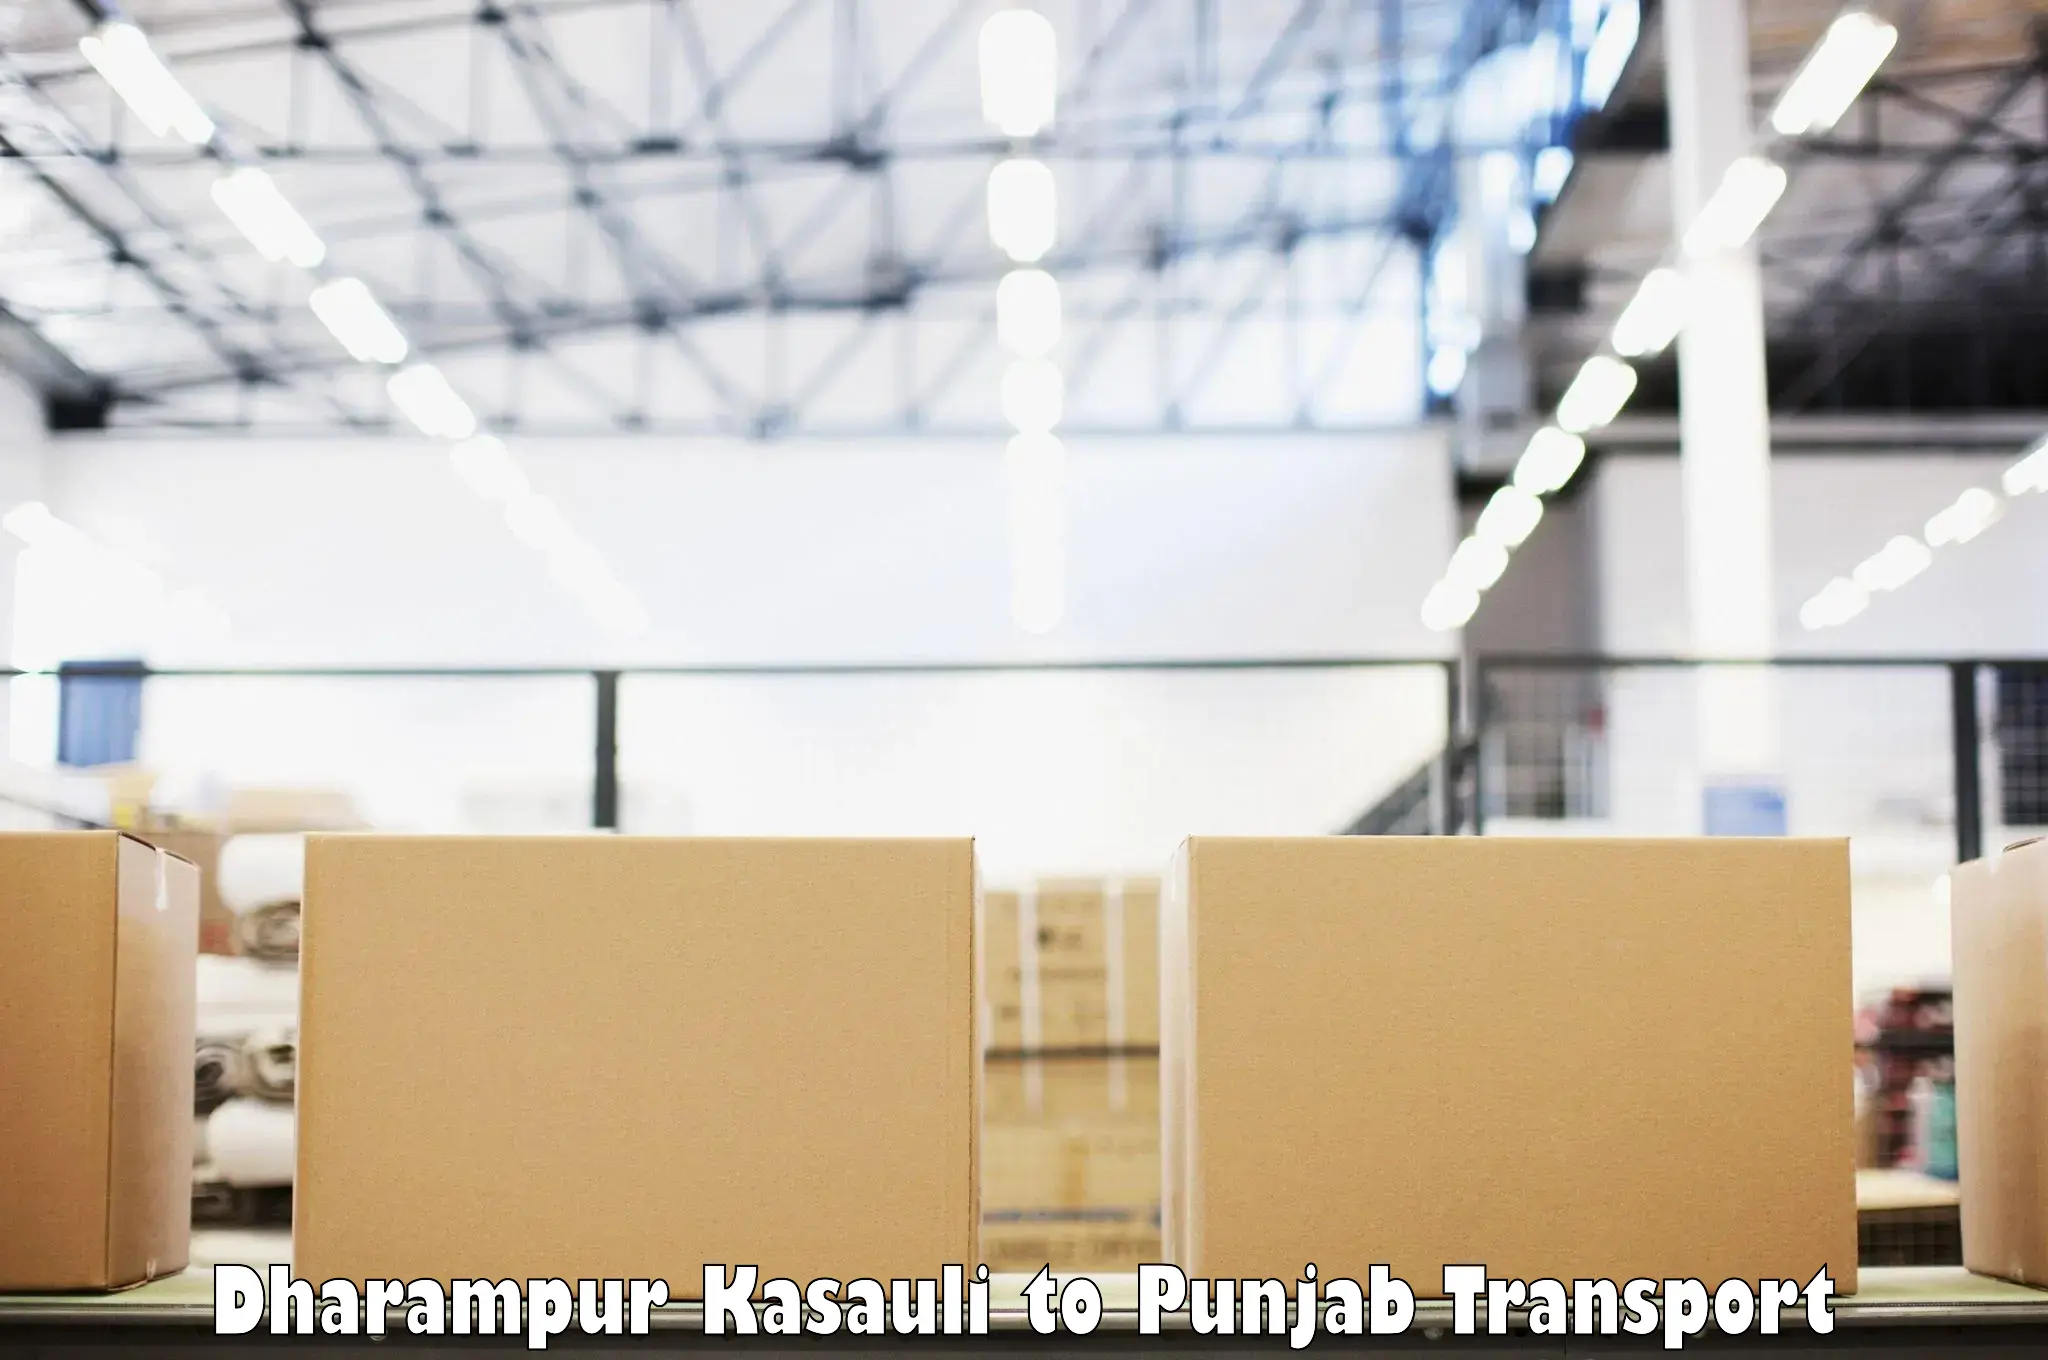 Express transport services Dharampur Kasauli to Phagwara